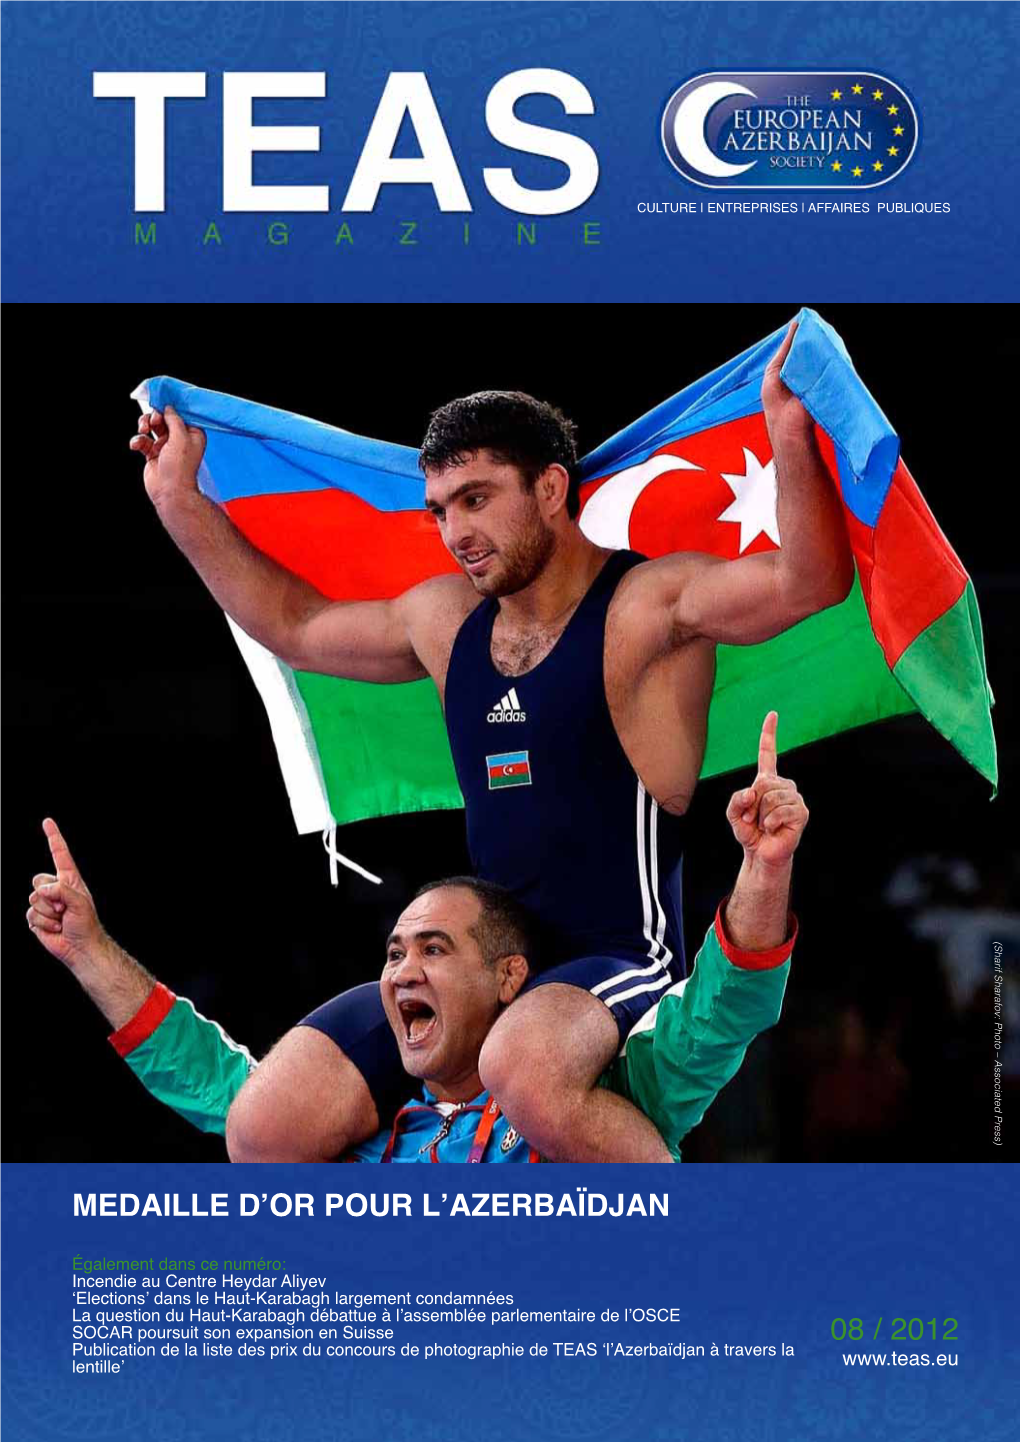 03 / 2012 Medaille D'or Pour L'azerbaïdjan 08 / 2012